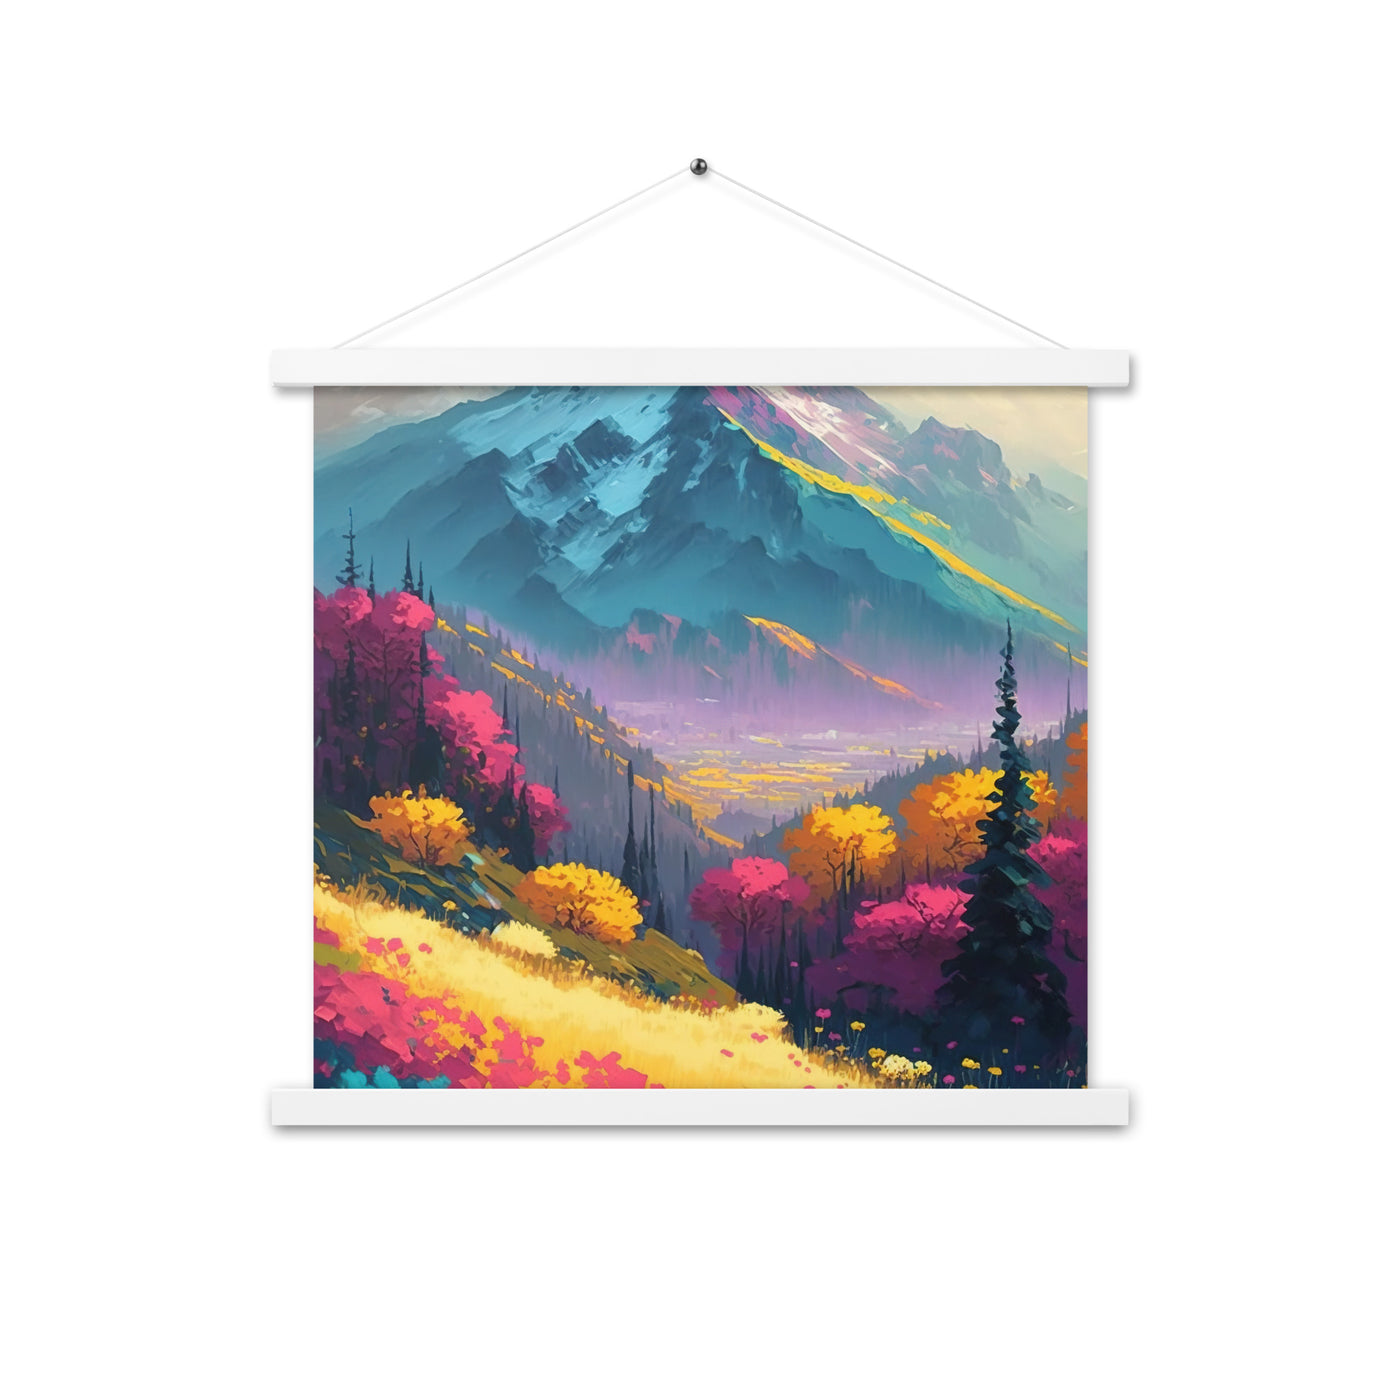 Berge, pinke und gelbe Bäume, sowie Blumen - Farbige Malerei - Premium Poster mit Aufhängung berge xxx 45.7 x 45.7 cm